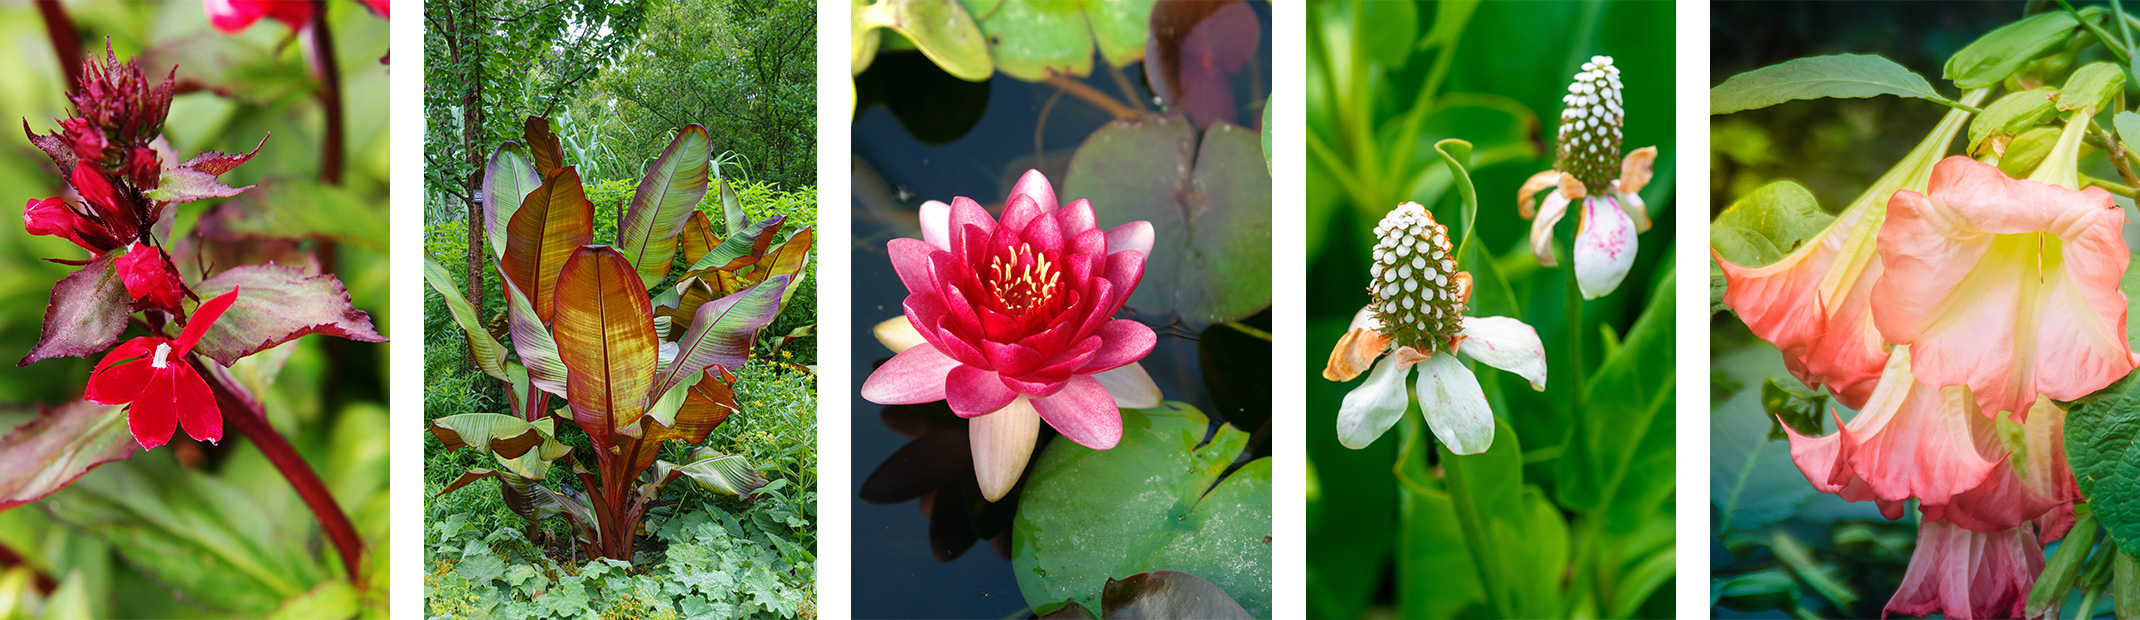 5 different varieties of water/aquatic plants.